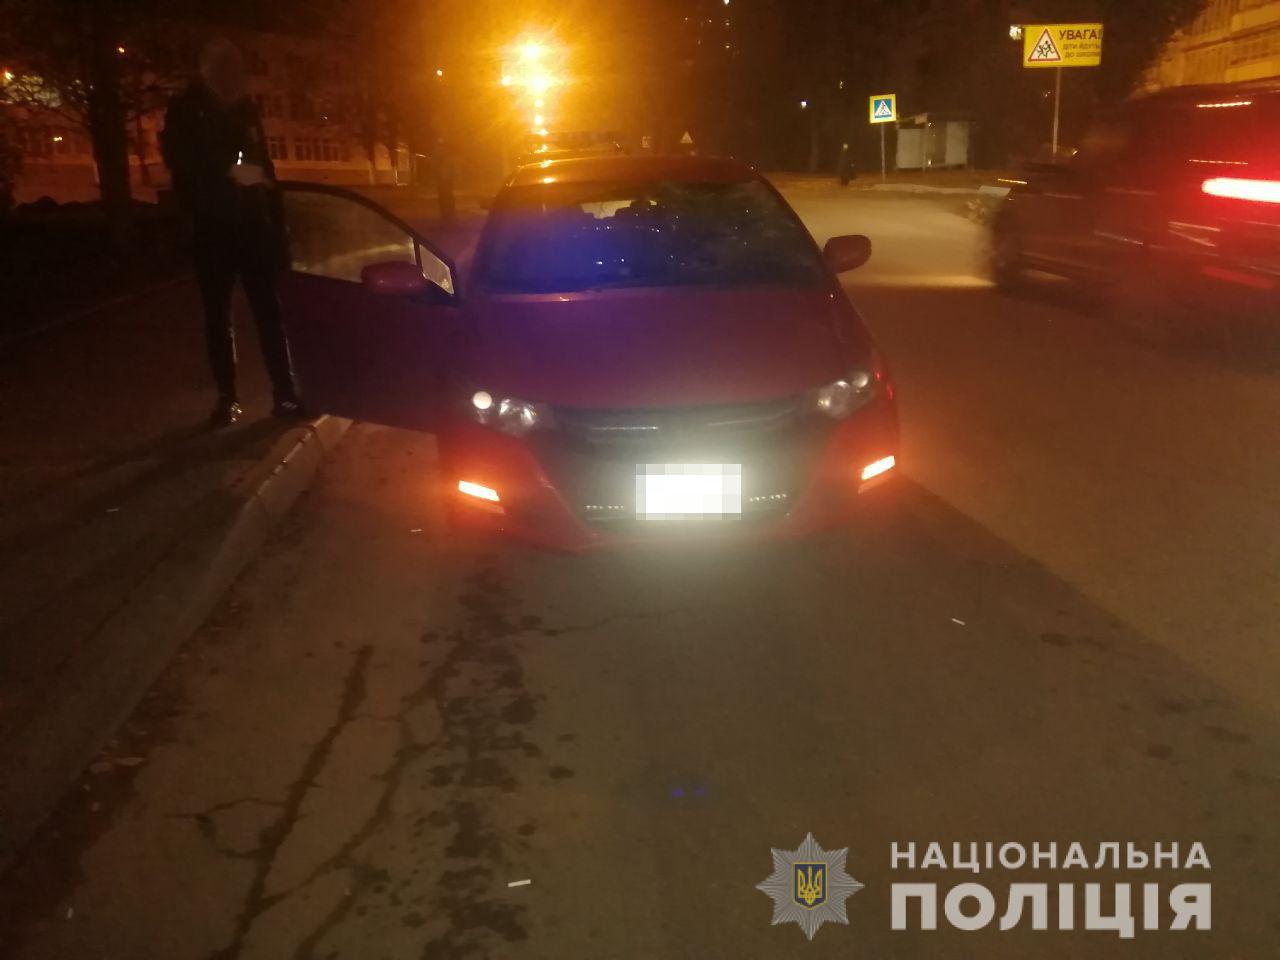 Сбитый на Салтовке пешеход умер в больнице. Полиция ищет свидетелей ДТП